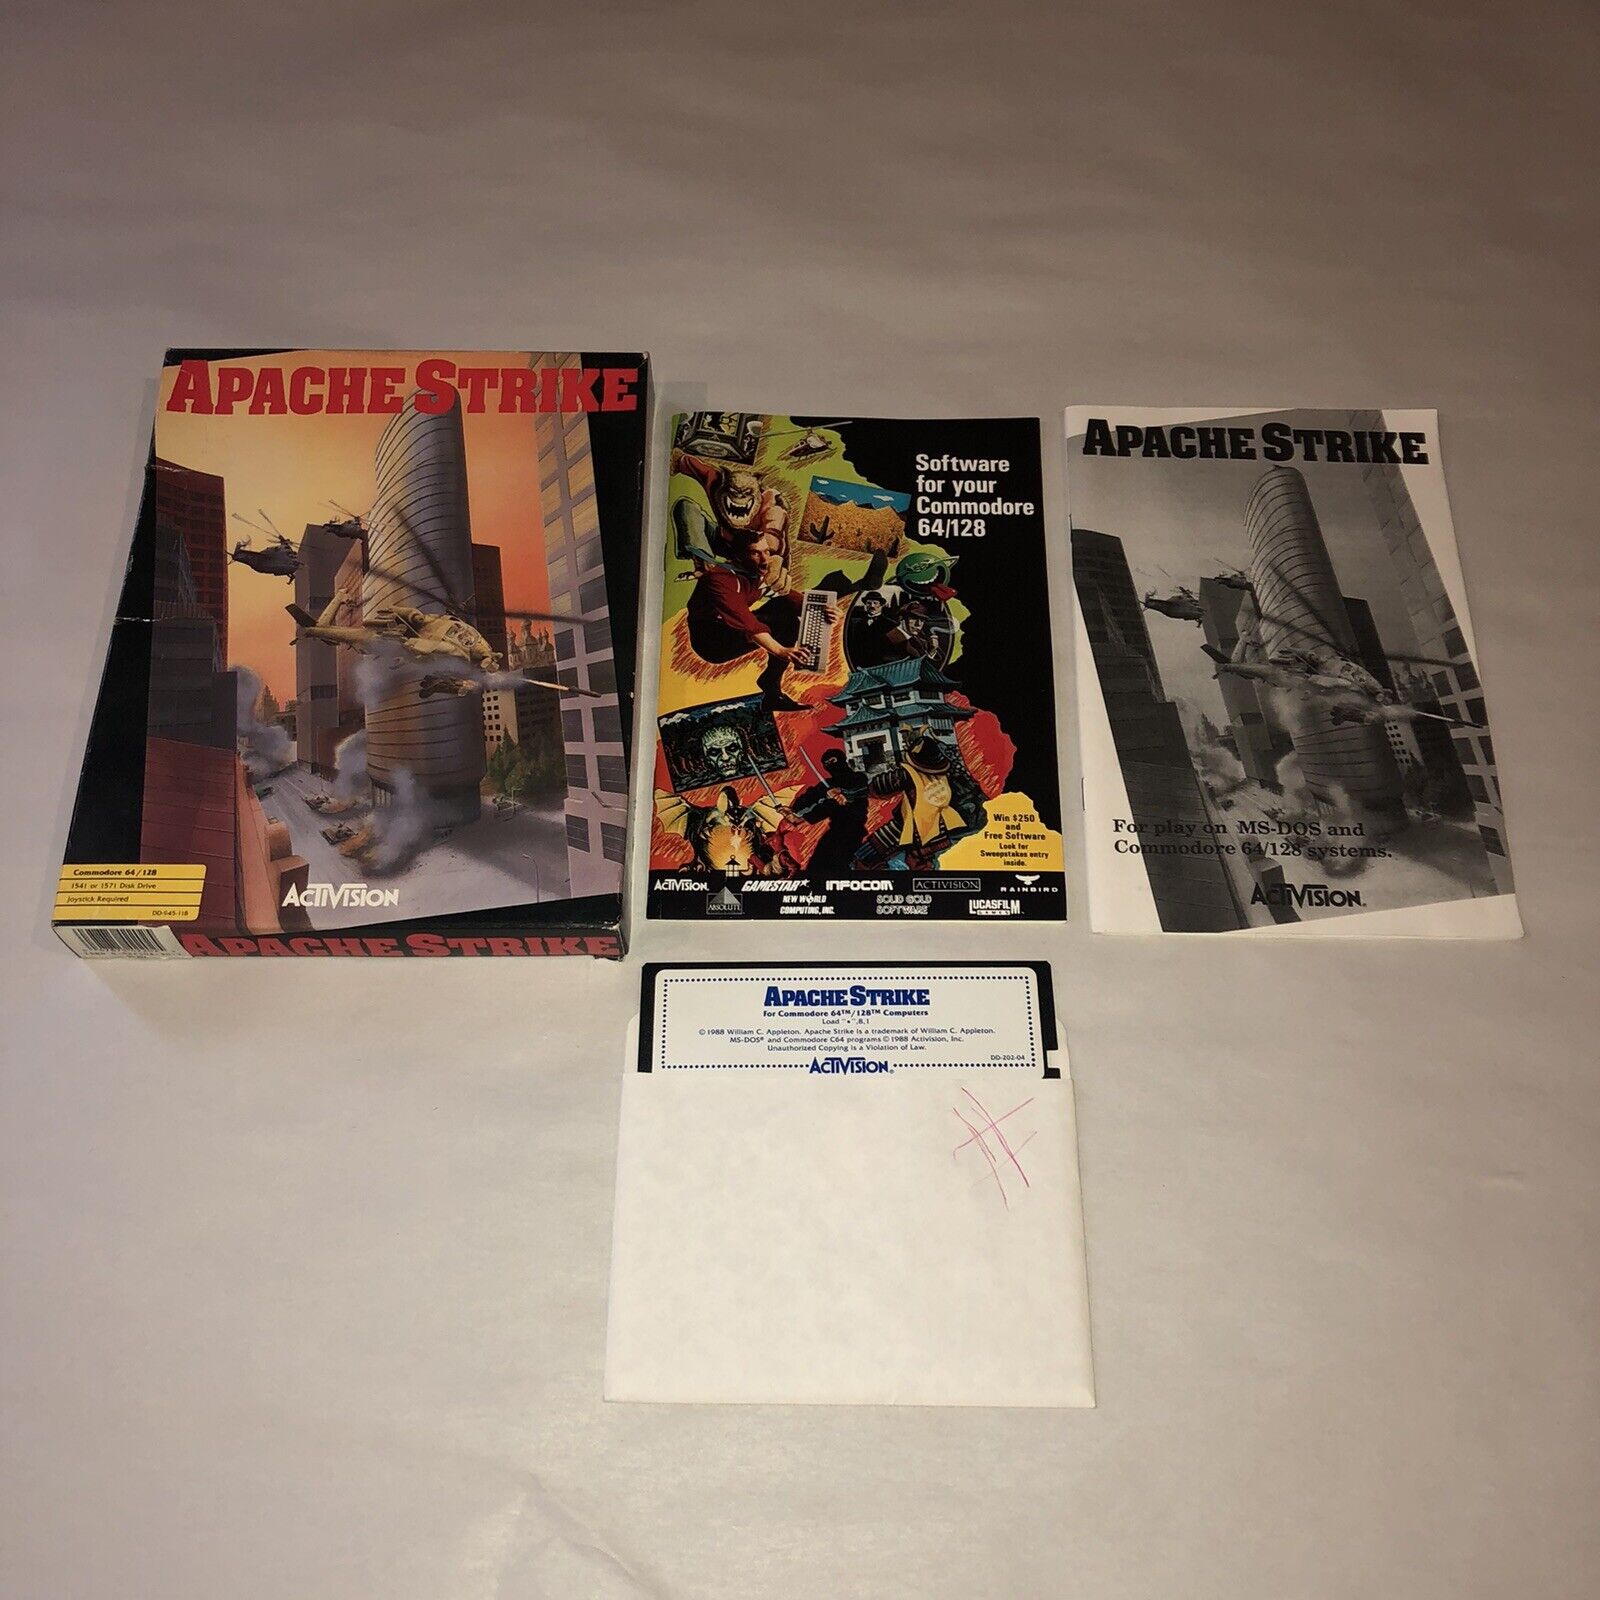 UNTESTED Commodore 64/128: APACHE STRIKE - C64 ORIGINAL Disk - Complete CIB